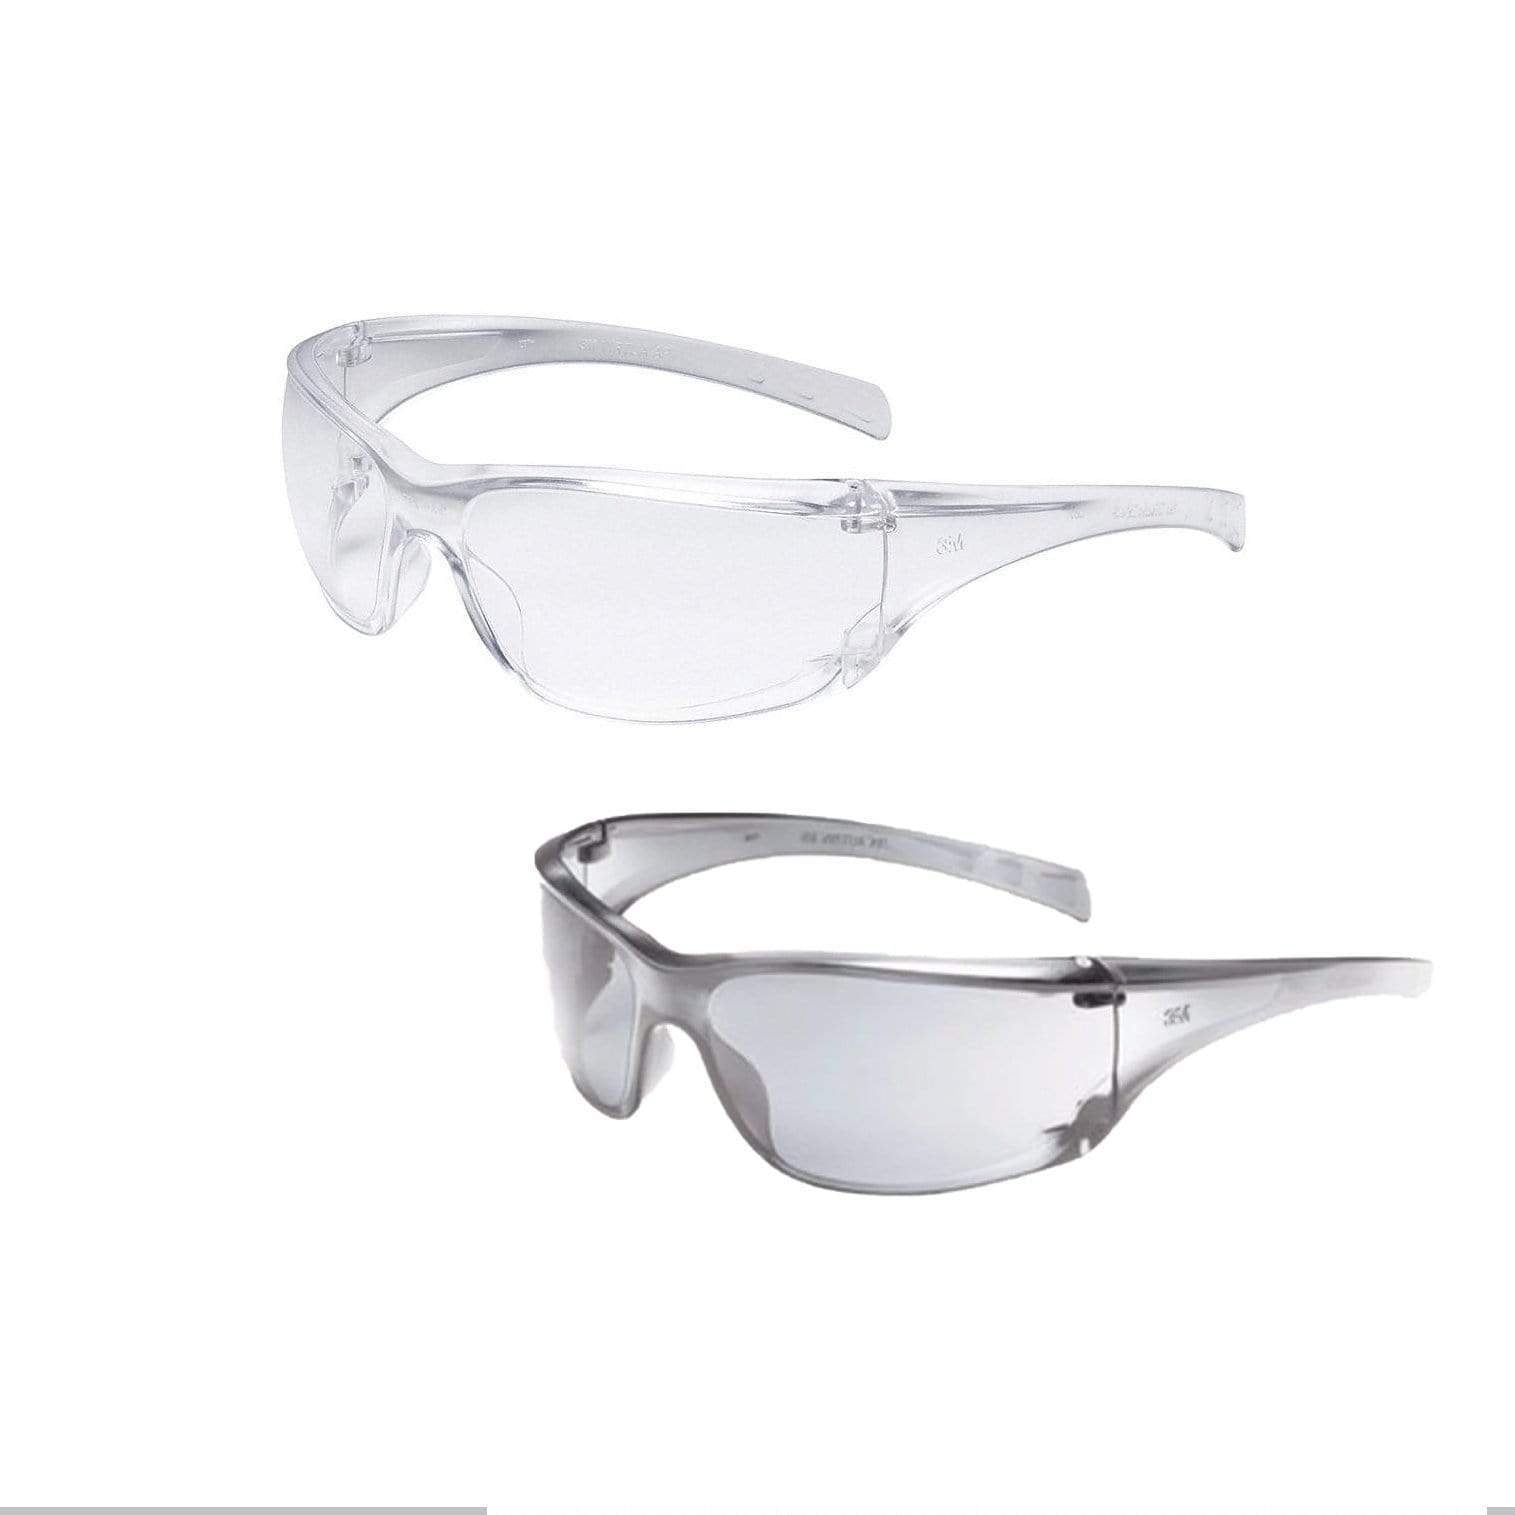 3M Virtua Series Safety Glasses